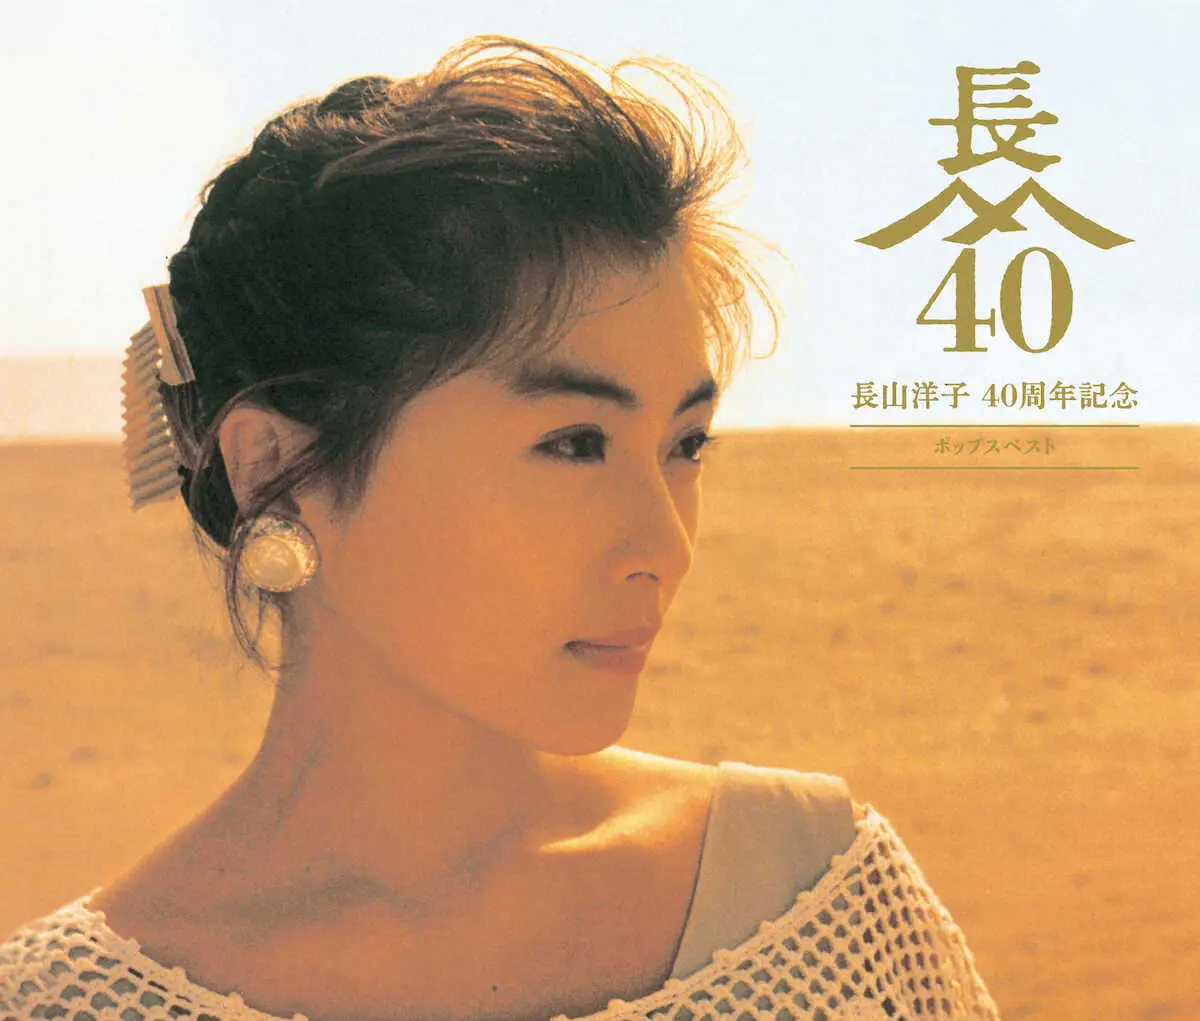 長山洋子の40周年記念のベスト盤「ポップスベスト」